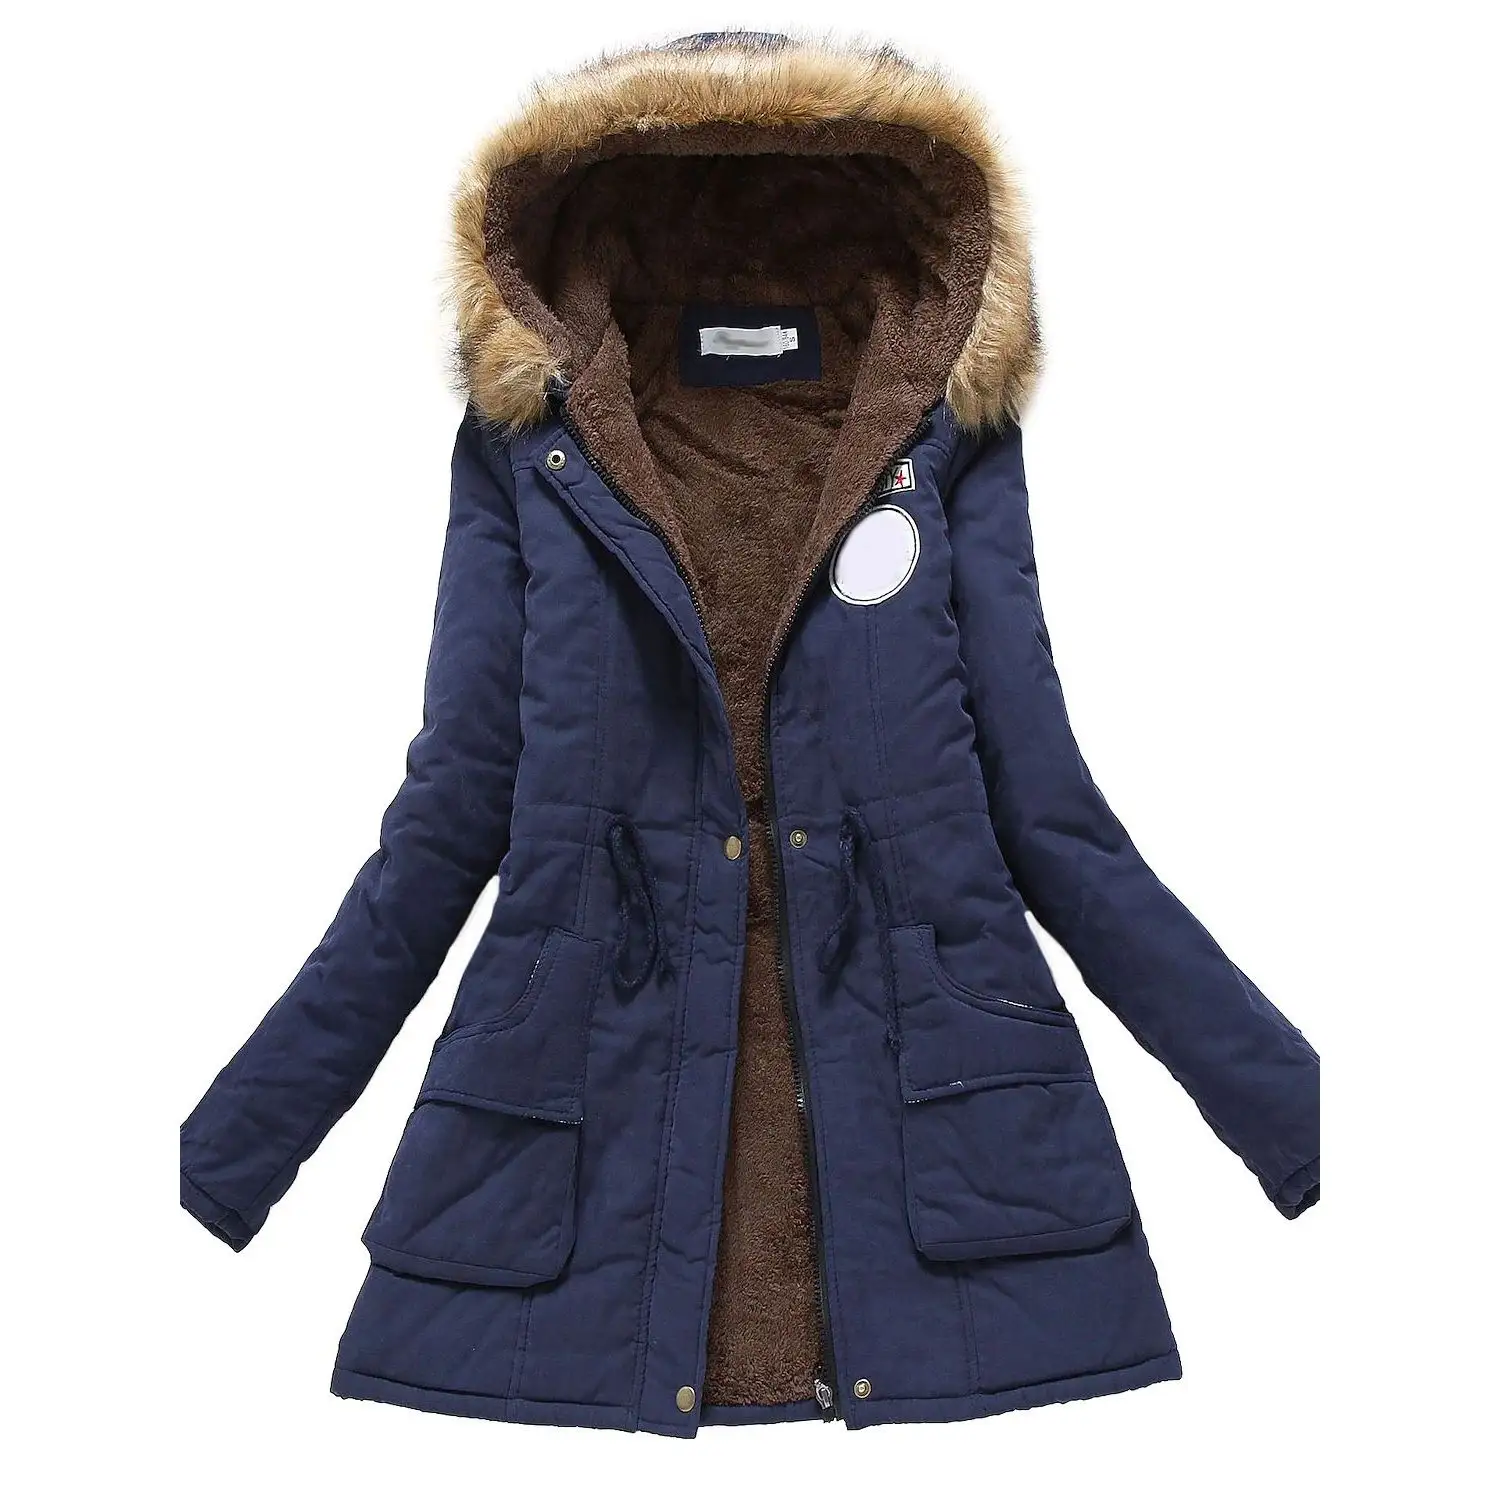 Casualwear Women's Padded Parka Jackets Sports Insulated Warm Cozy Fur Coat Windproof Hooded Blue Parka Jacket For Women